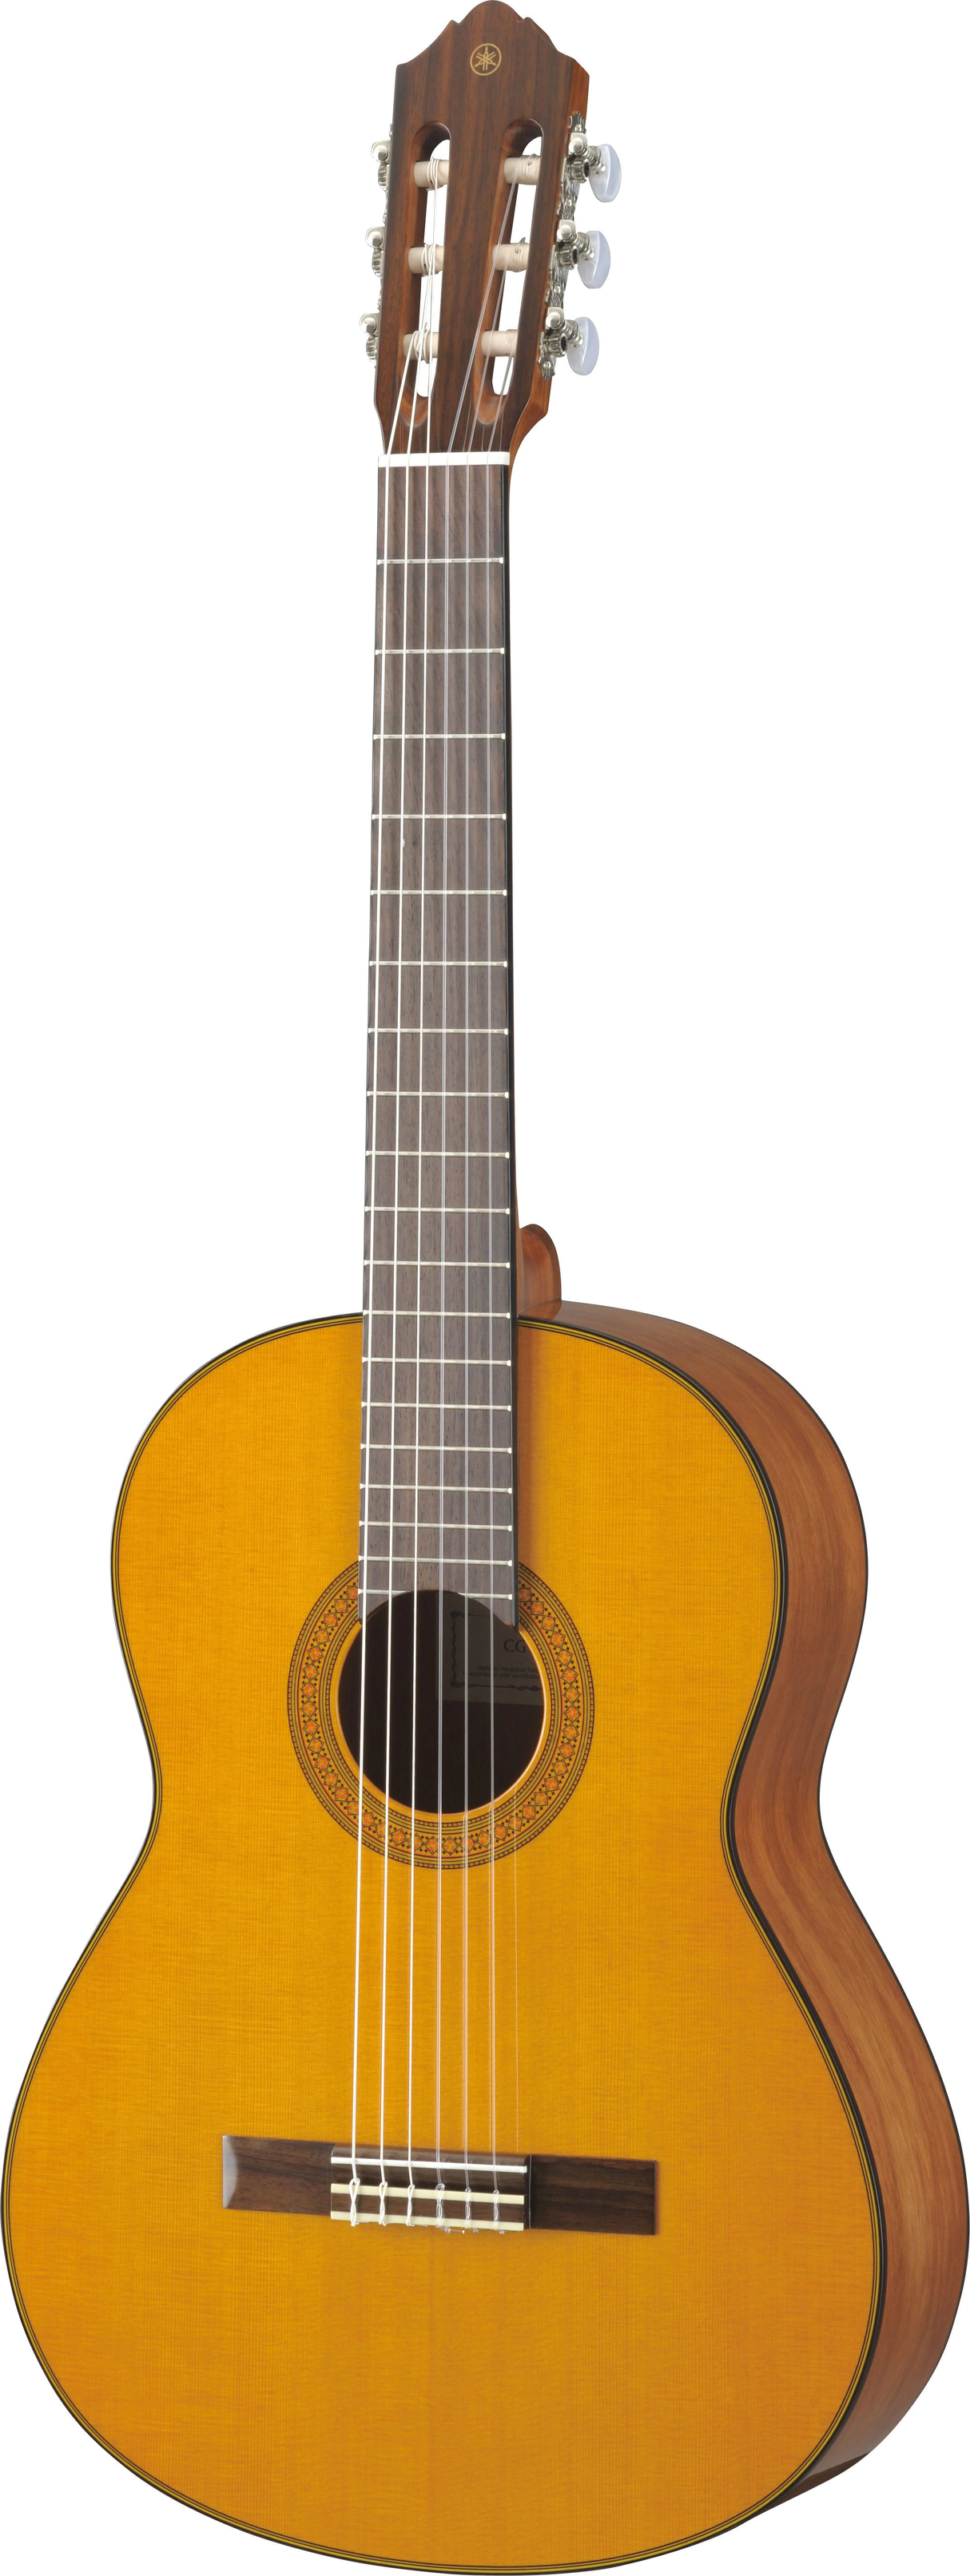 Yamaha CG142CH Solid Cedar Top Classical Guitar, Natural